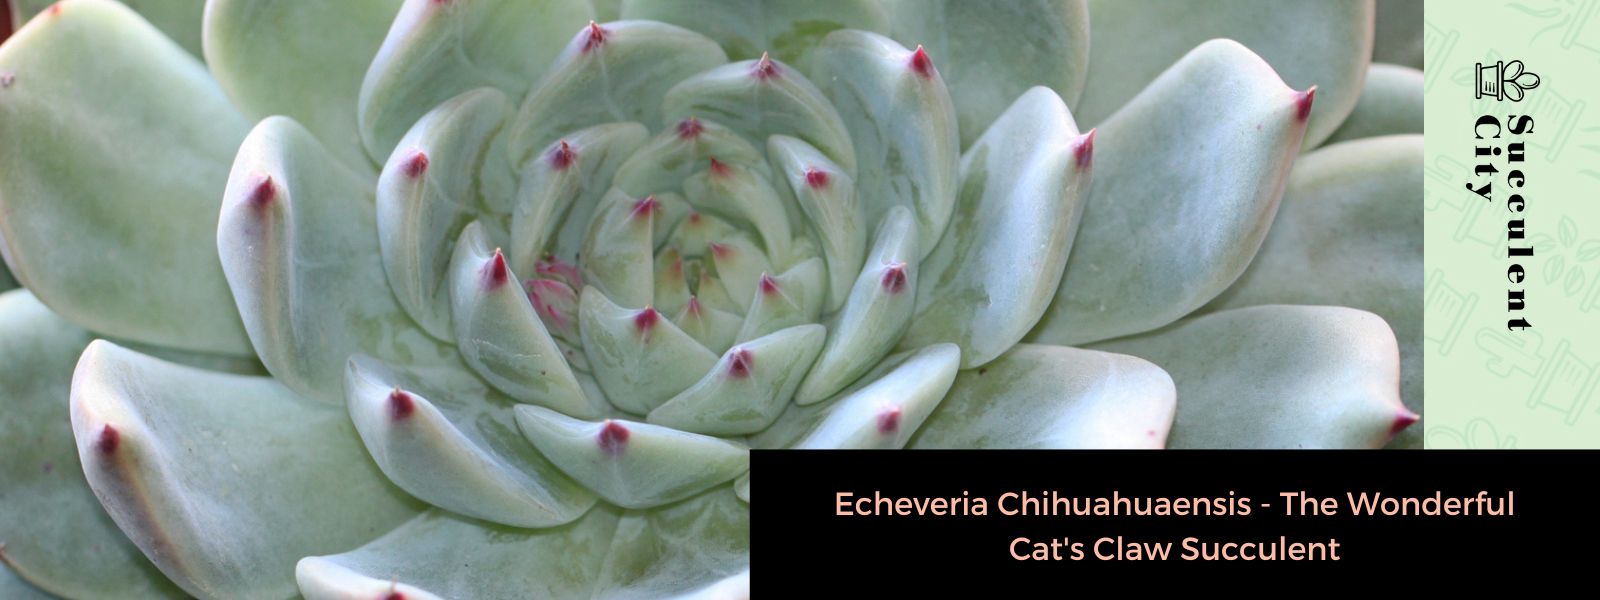 Echeveria Chihuahuaensis – La maravillosa suculenta uña de gato